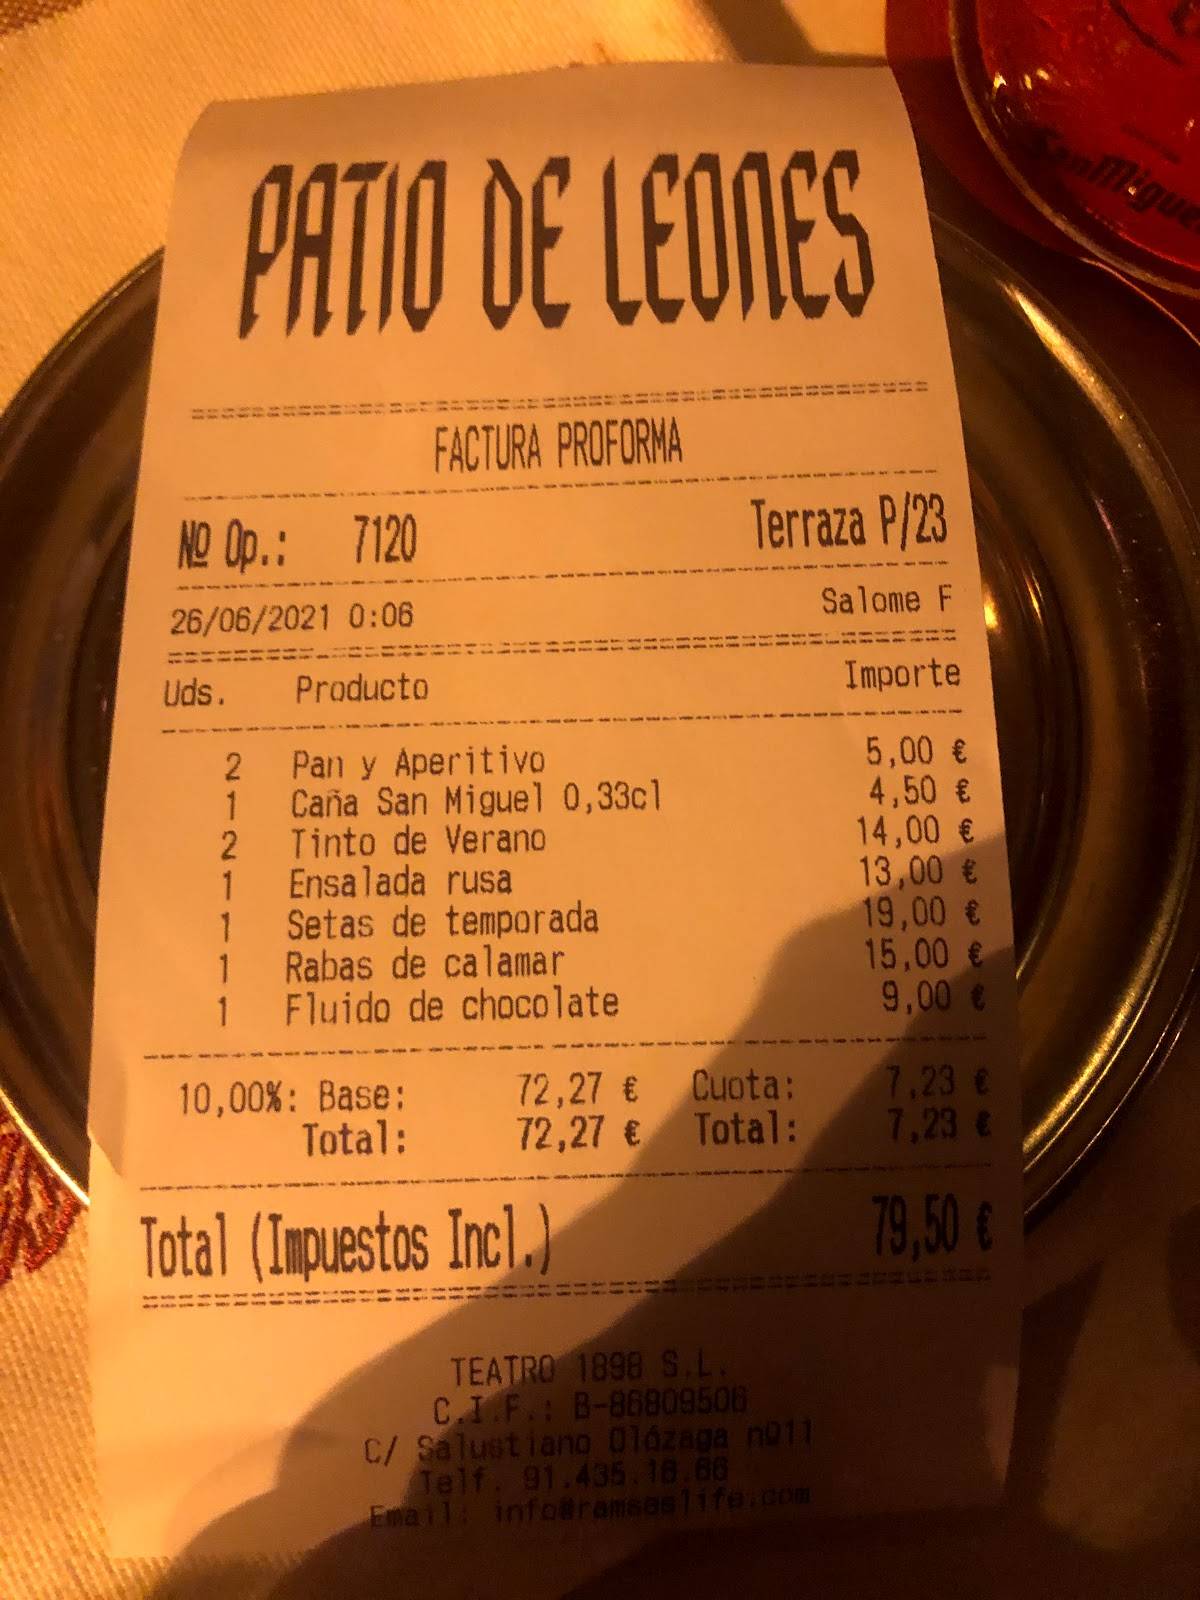 Menu at Patio de Leones restaurant, Madrid